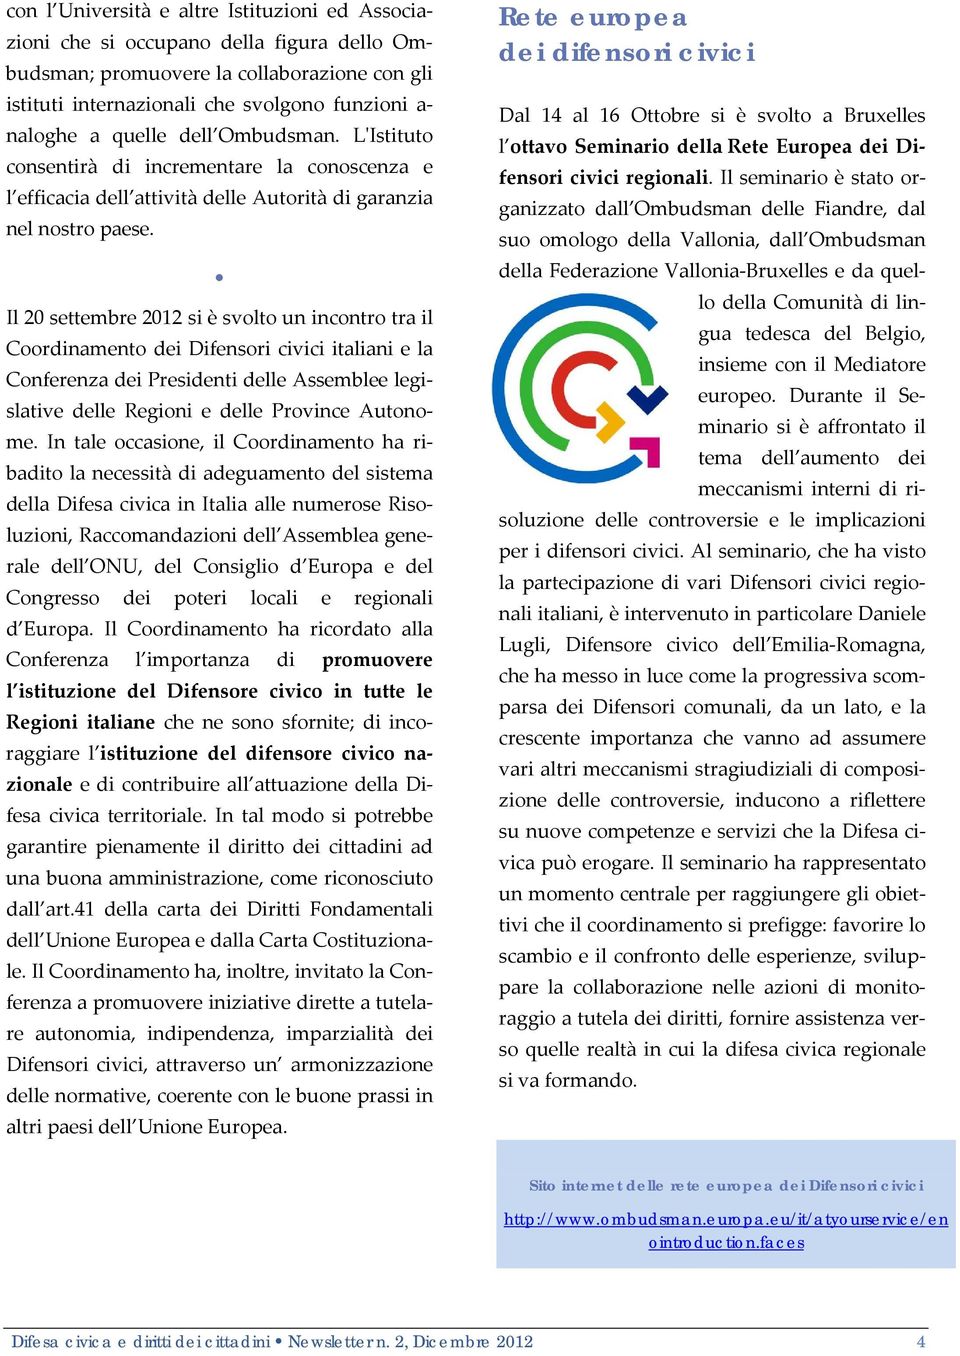 Il 20 settembre 2012 si è svolto un incontro tra il Coordinamento dei Difensori civici italiani e la Conferenza dei Presidenti delle Assemblee legislative delle Regioni e delle Province Autonome.